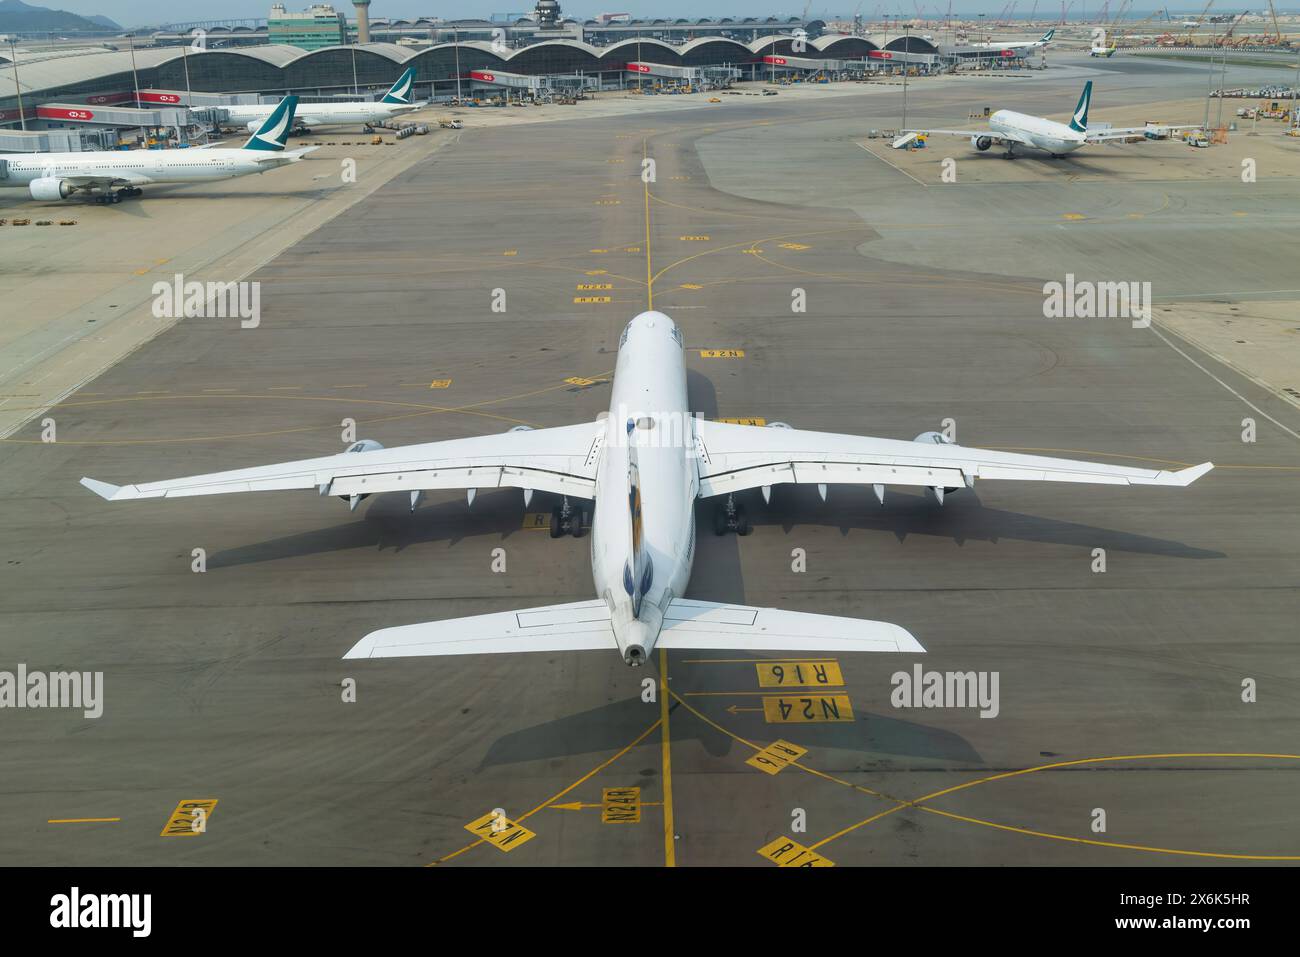 ufthansa Airliners Airbus A340 airplane at Hong Kong Airport Stock Photo